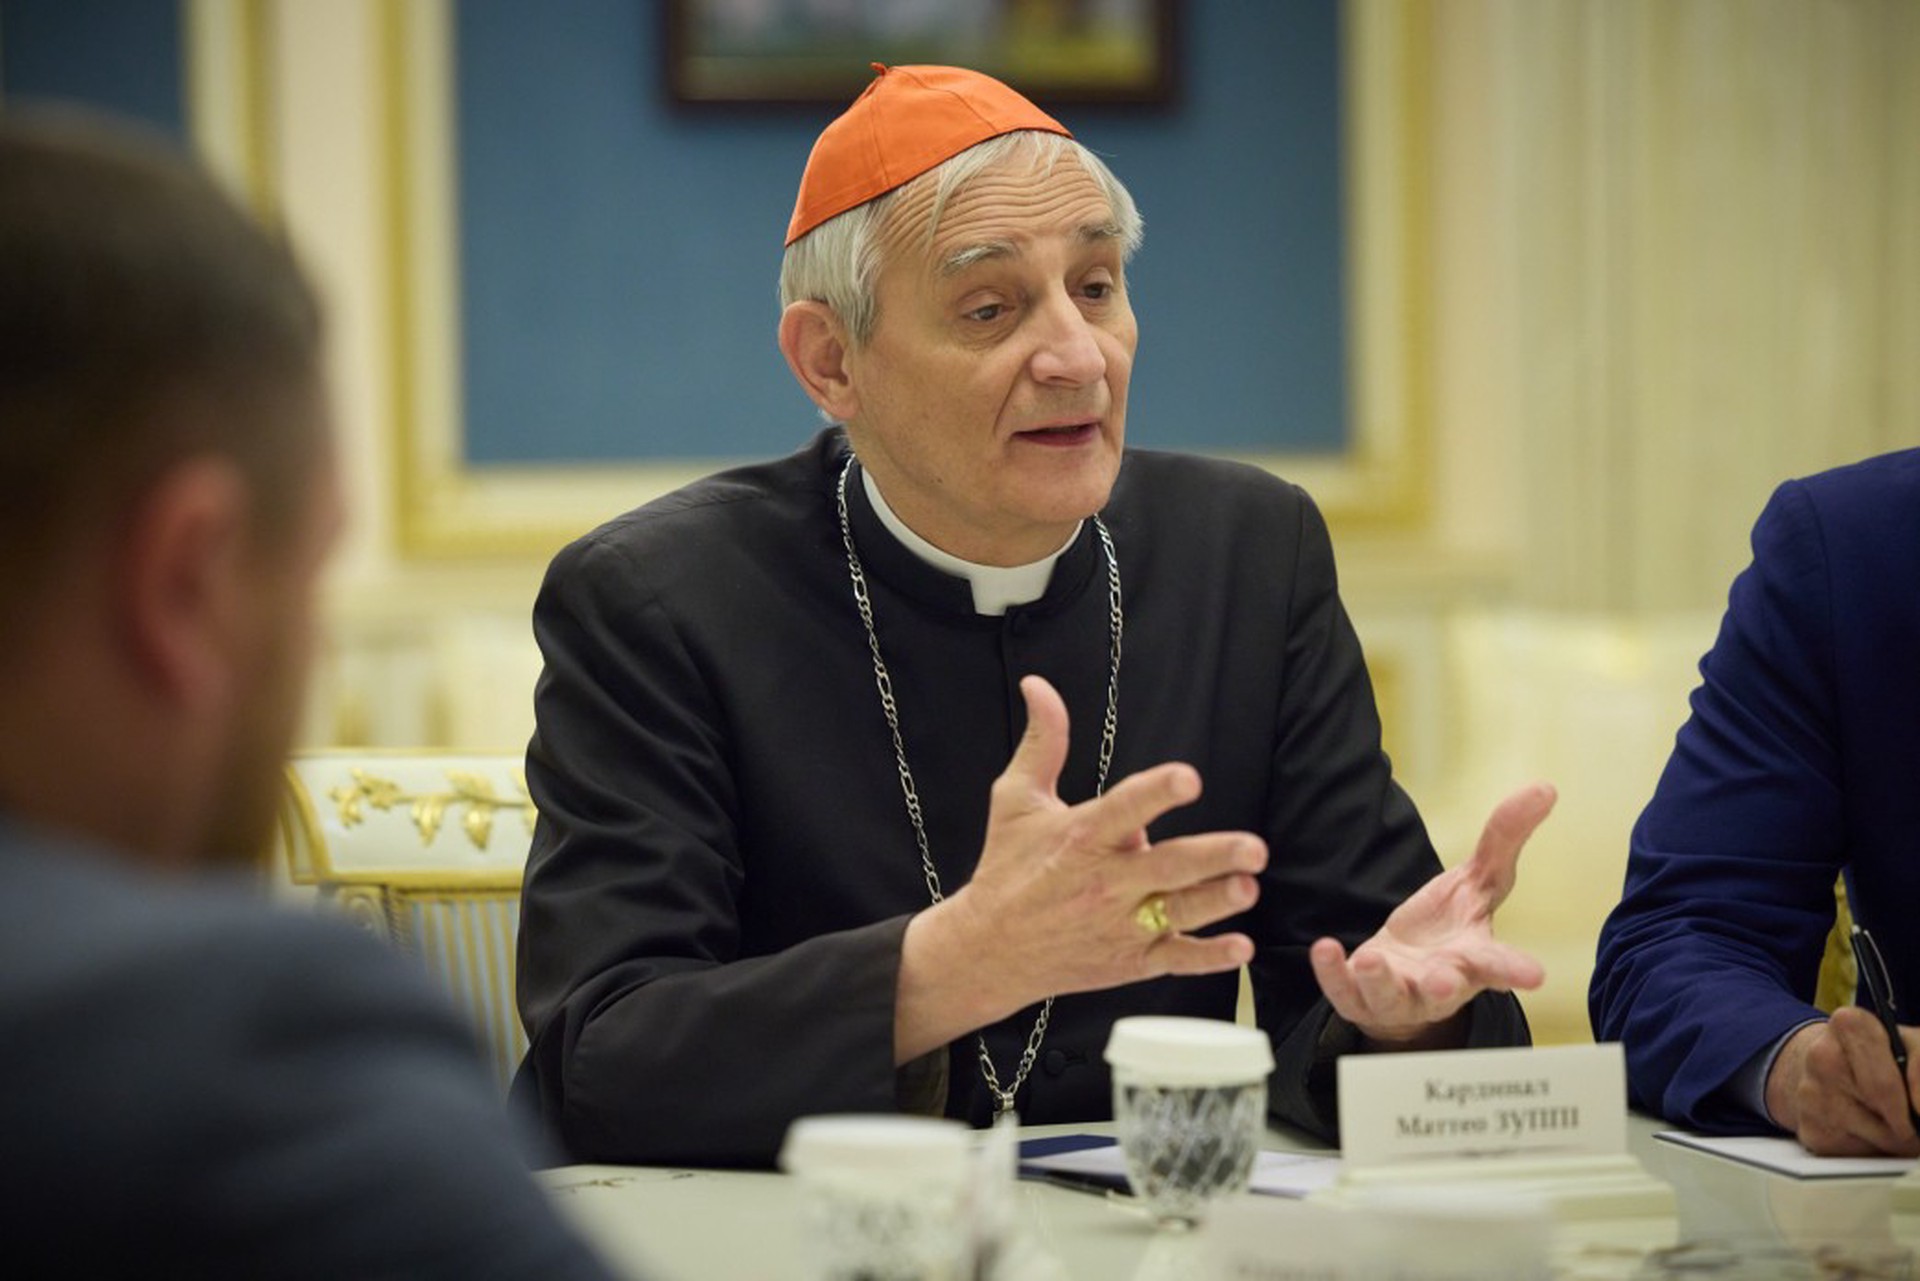 Посланник Папы Римского Дзуппи: ЕС делает слишком мало для достижения мира на Украине